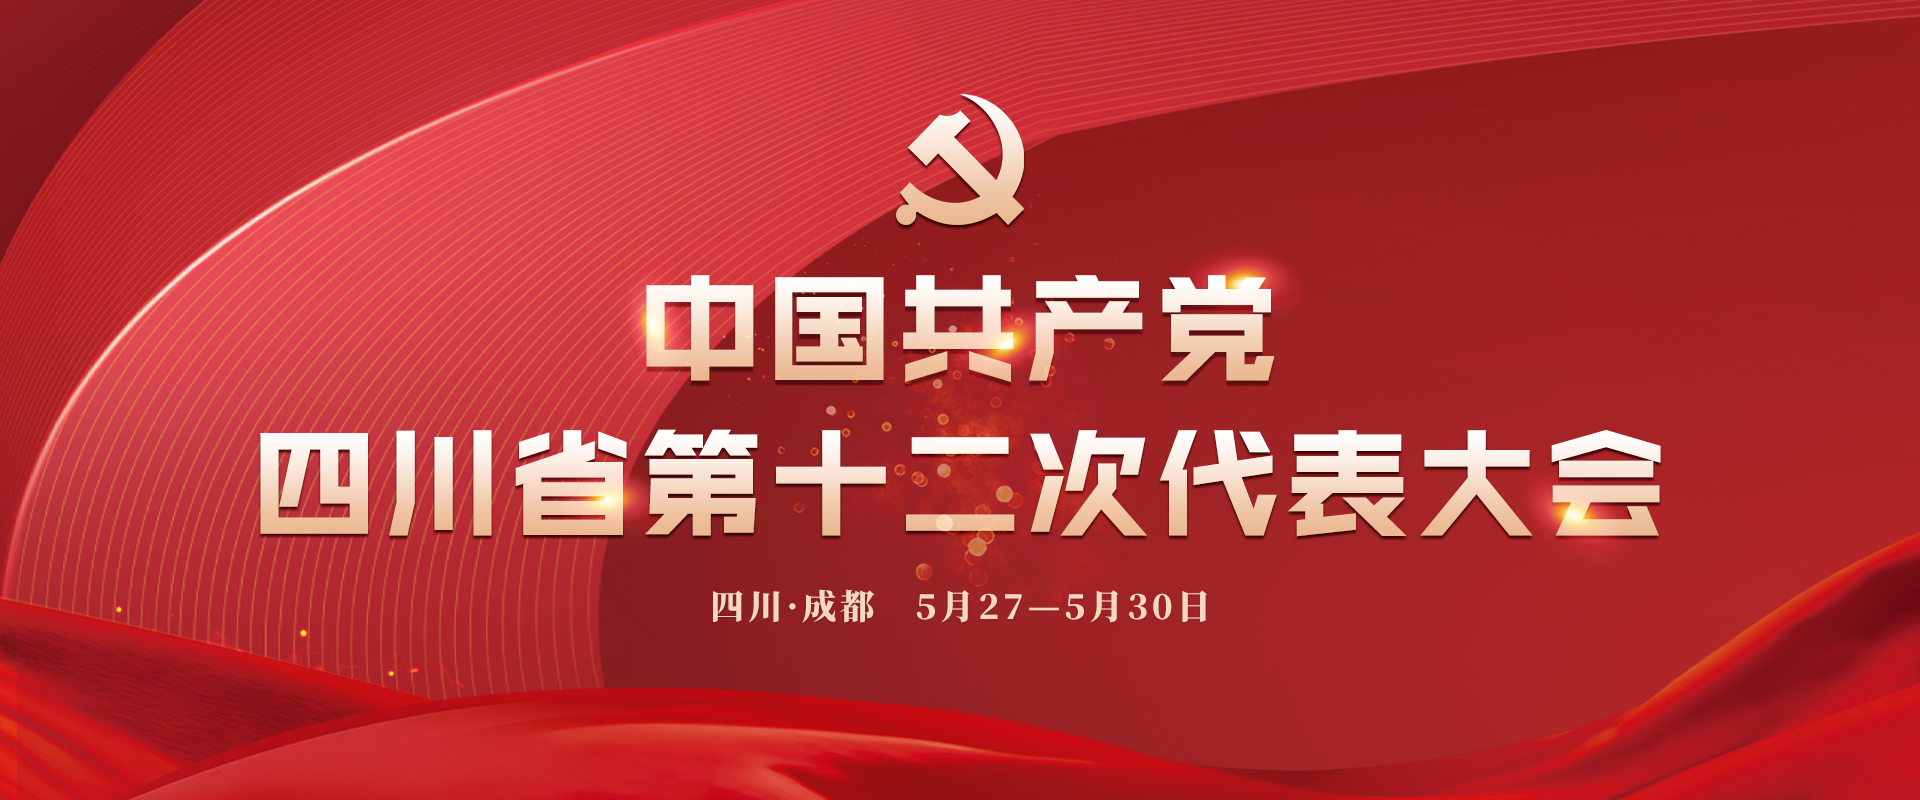 中國共產黨四川省第十二次代表大會中國共產黨四川省第十二次代表大會